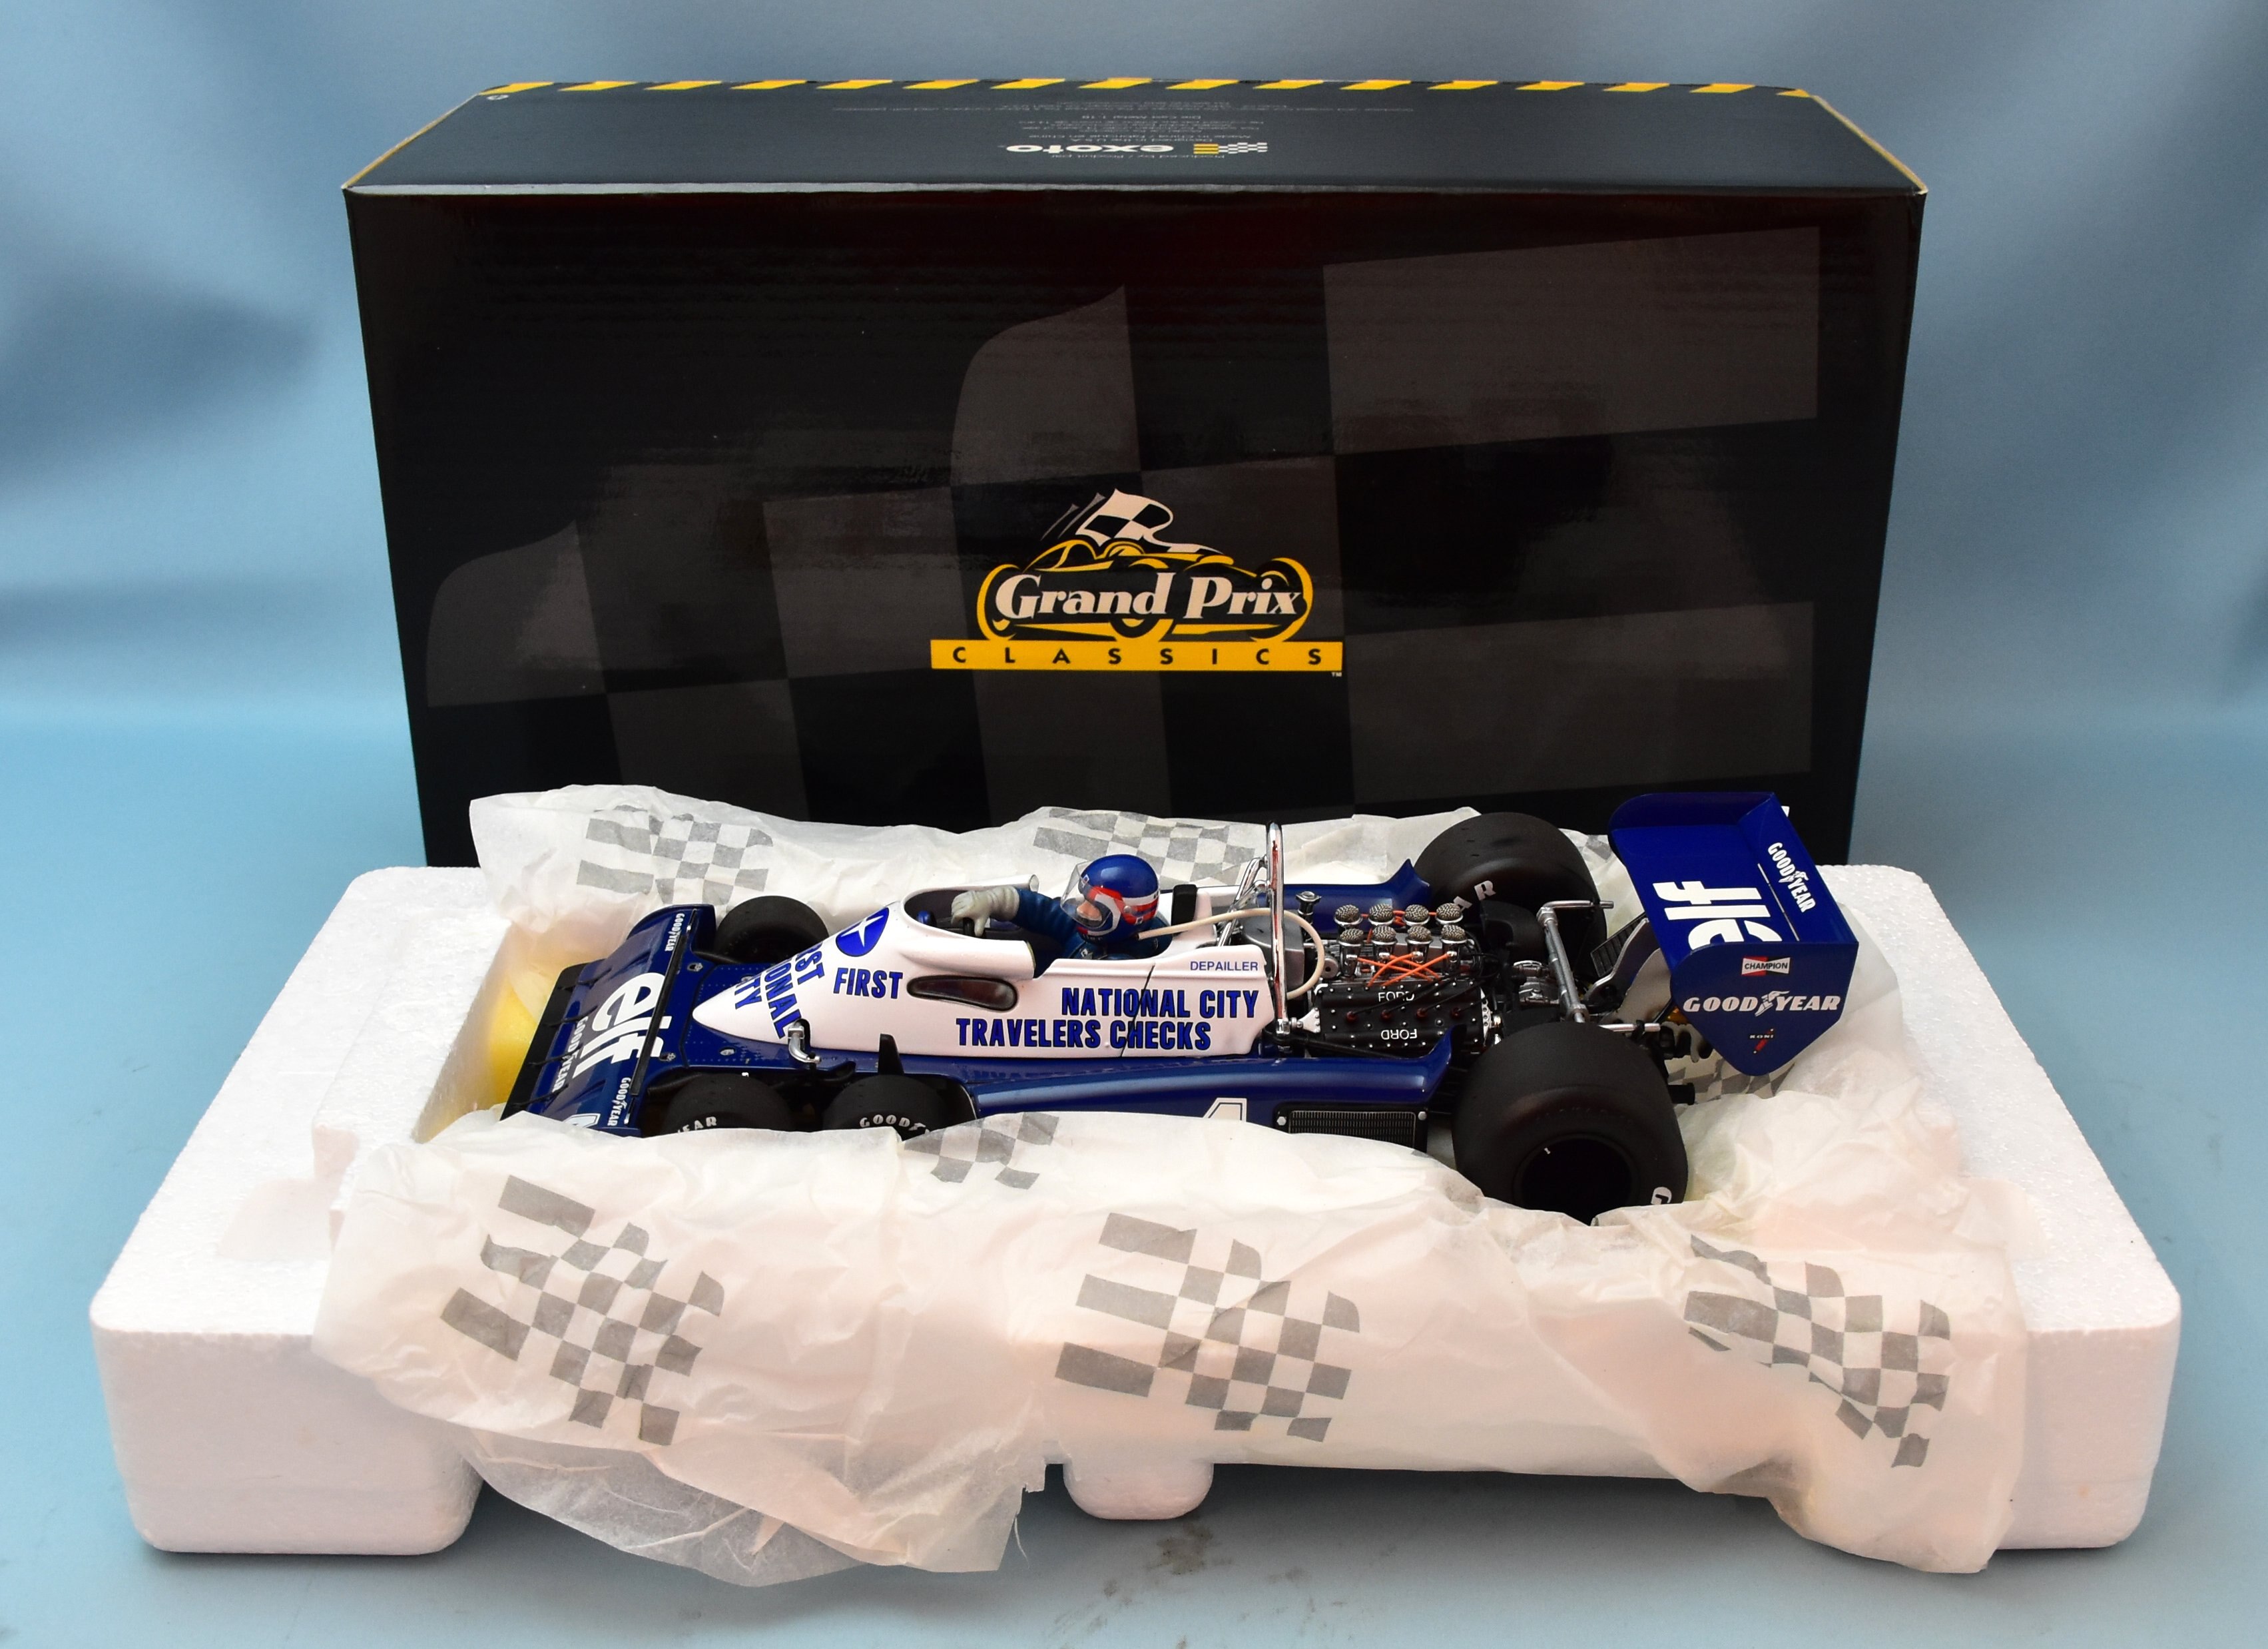 ティレル フォード F34 1:18 Grand Prix CLASSICS - おもちゃ